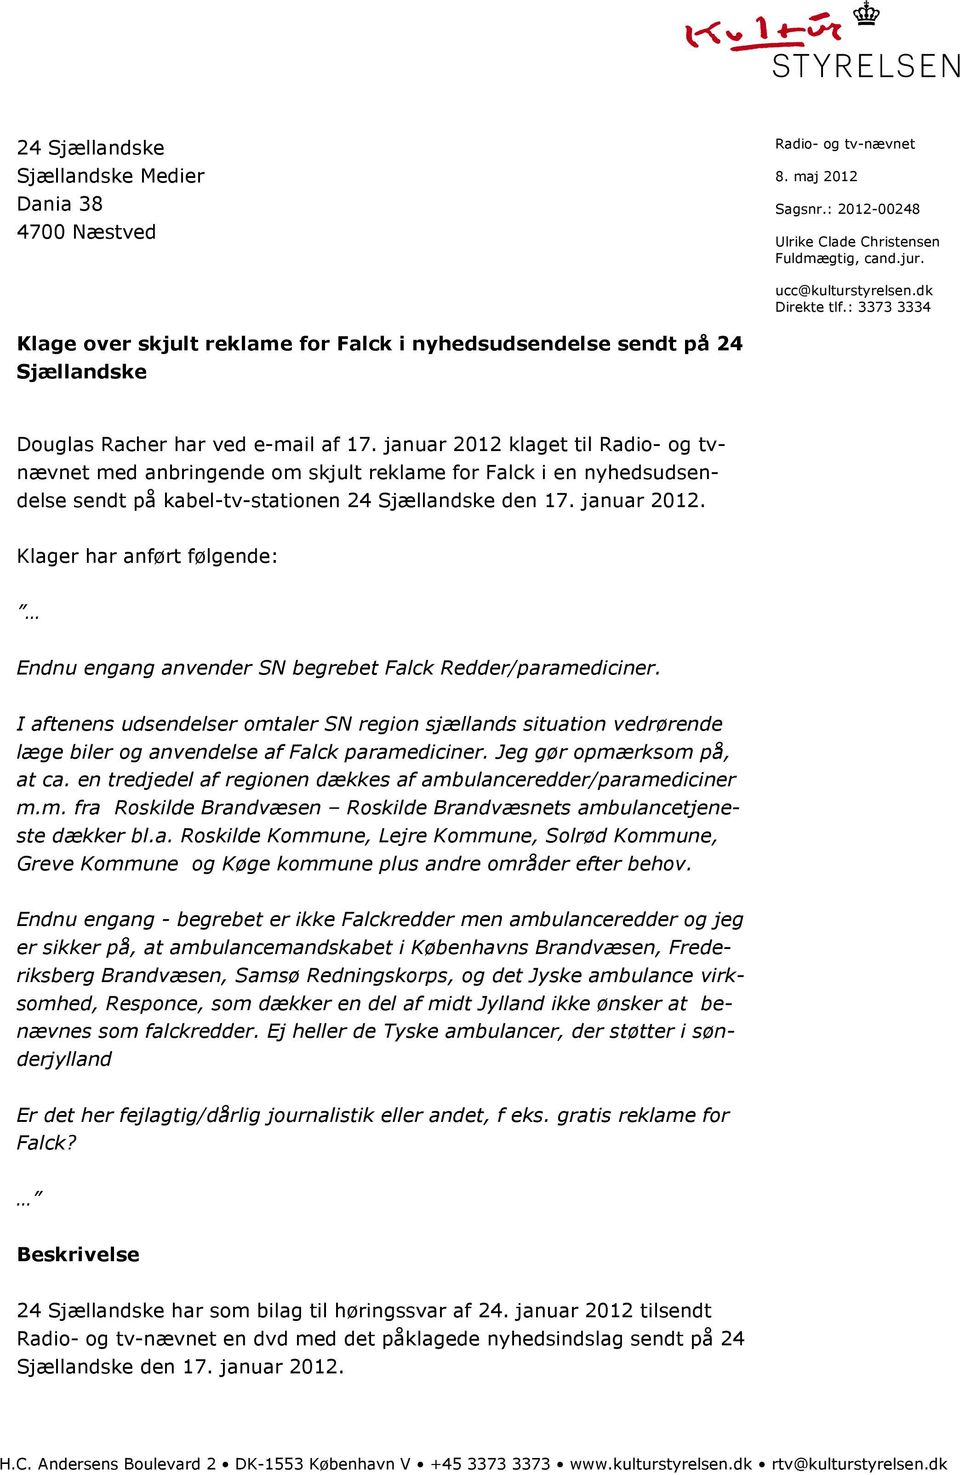 januar 2012 klaget til Radio- og tvnævnet med anbringende om skjult reklame for Falck i en nyhedsudsendelse sendt på kabel-tv-stationen 24 Sjællandske den 17. januar 2012.